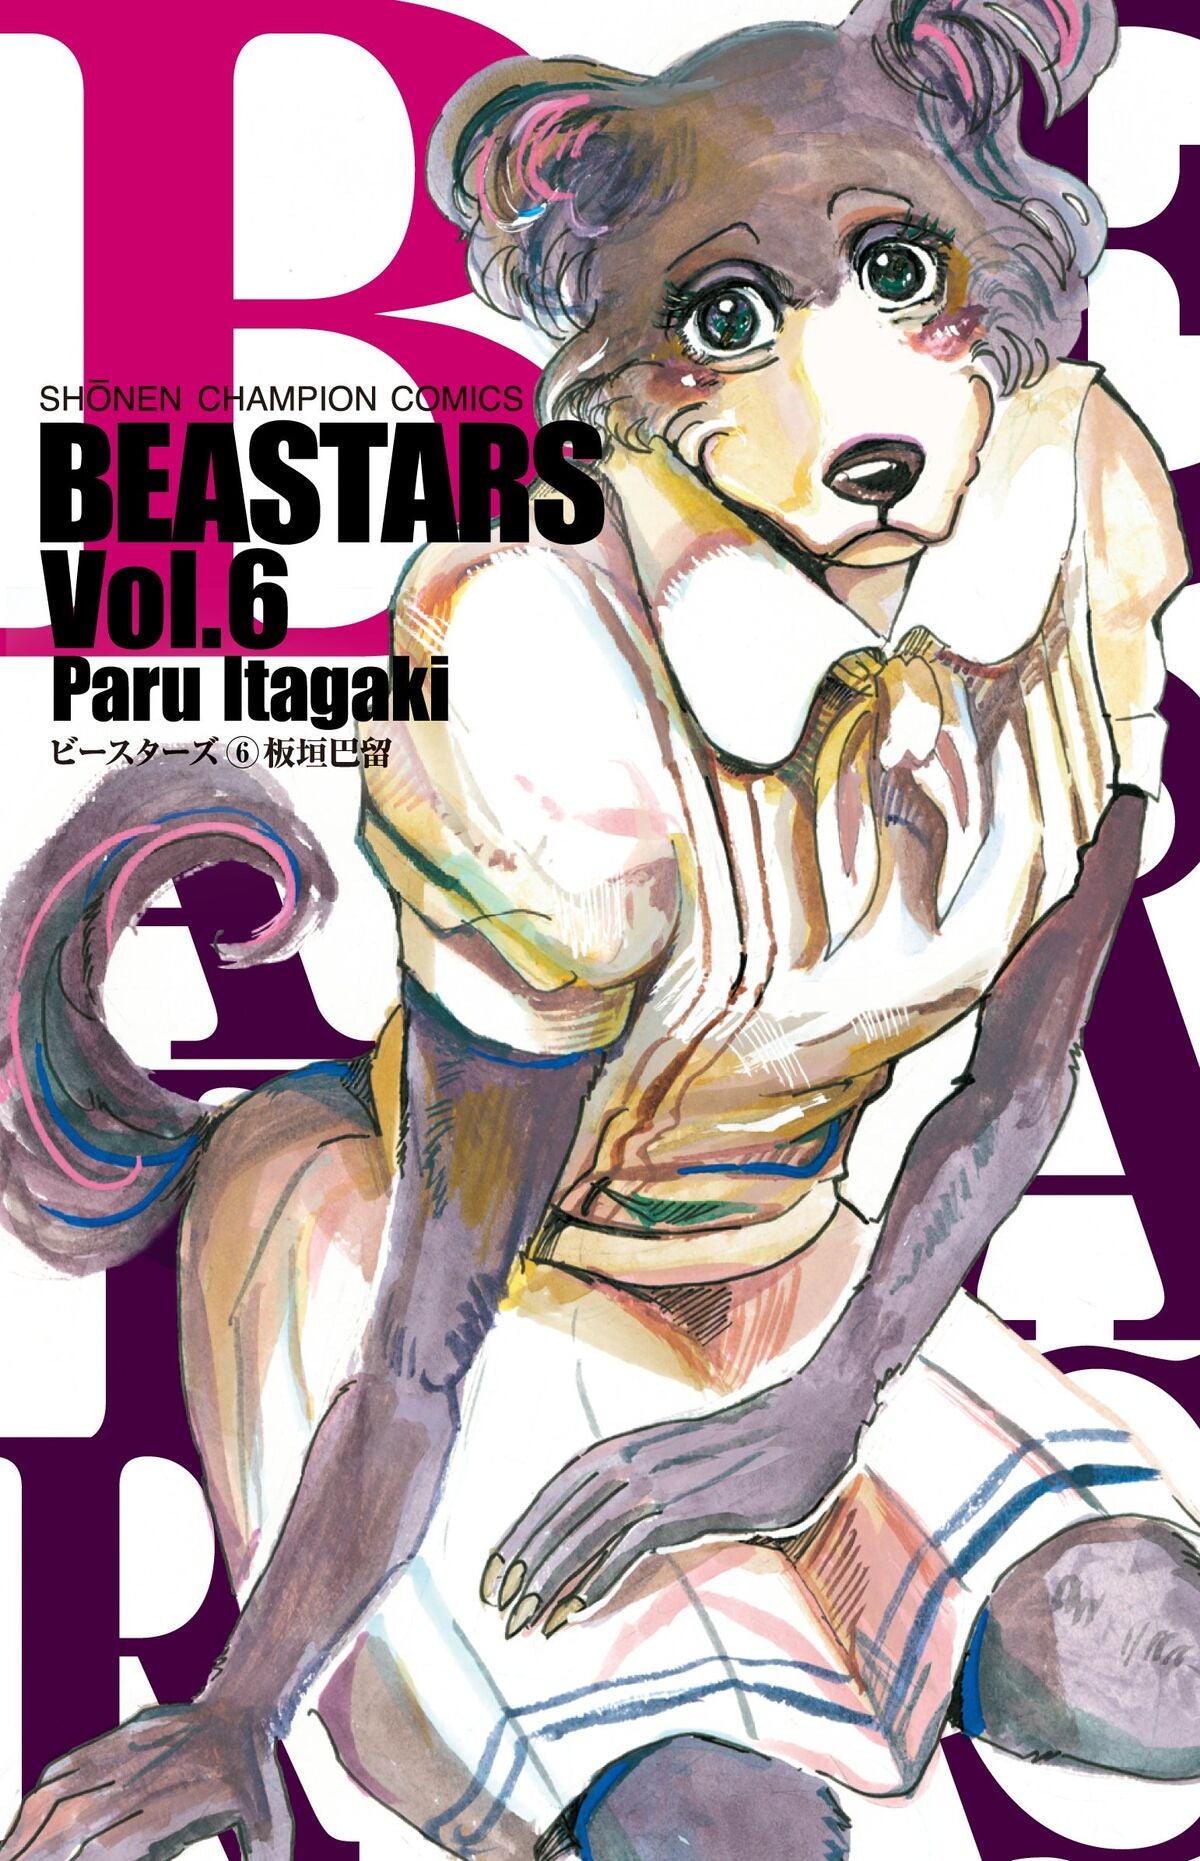 Beastars #06 - Fantasy Spells